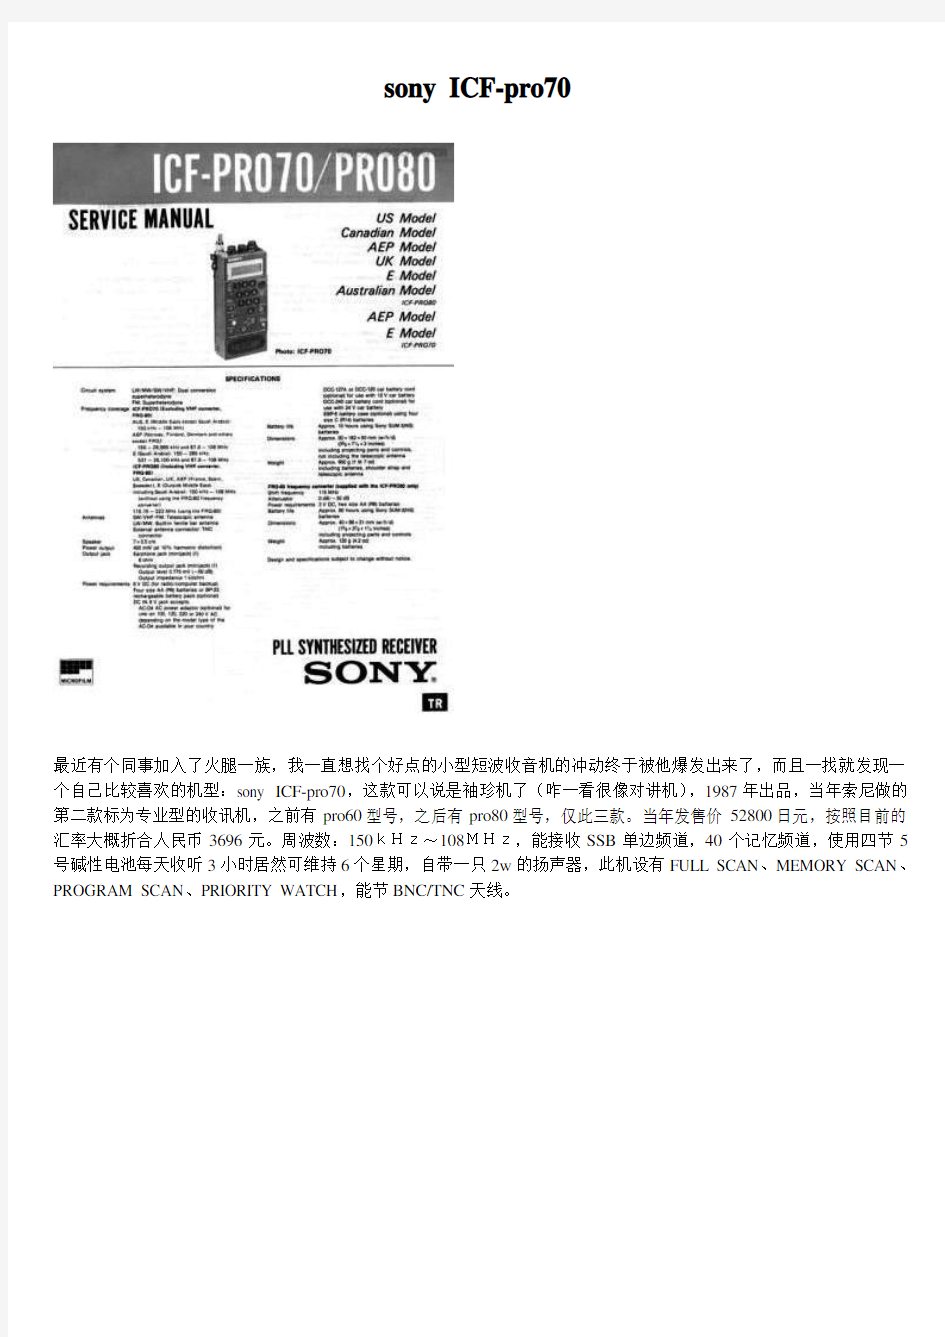 SONY索尼ICF-Pro70-Pro80收音机介绍